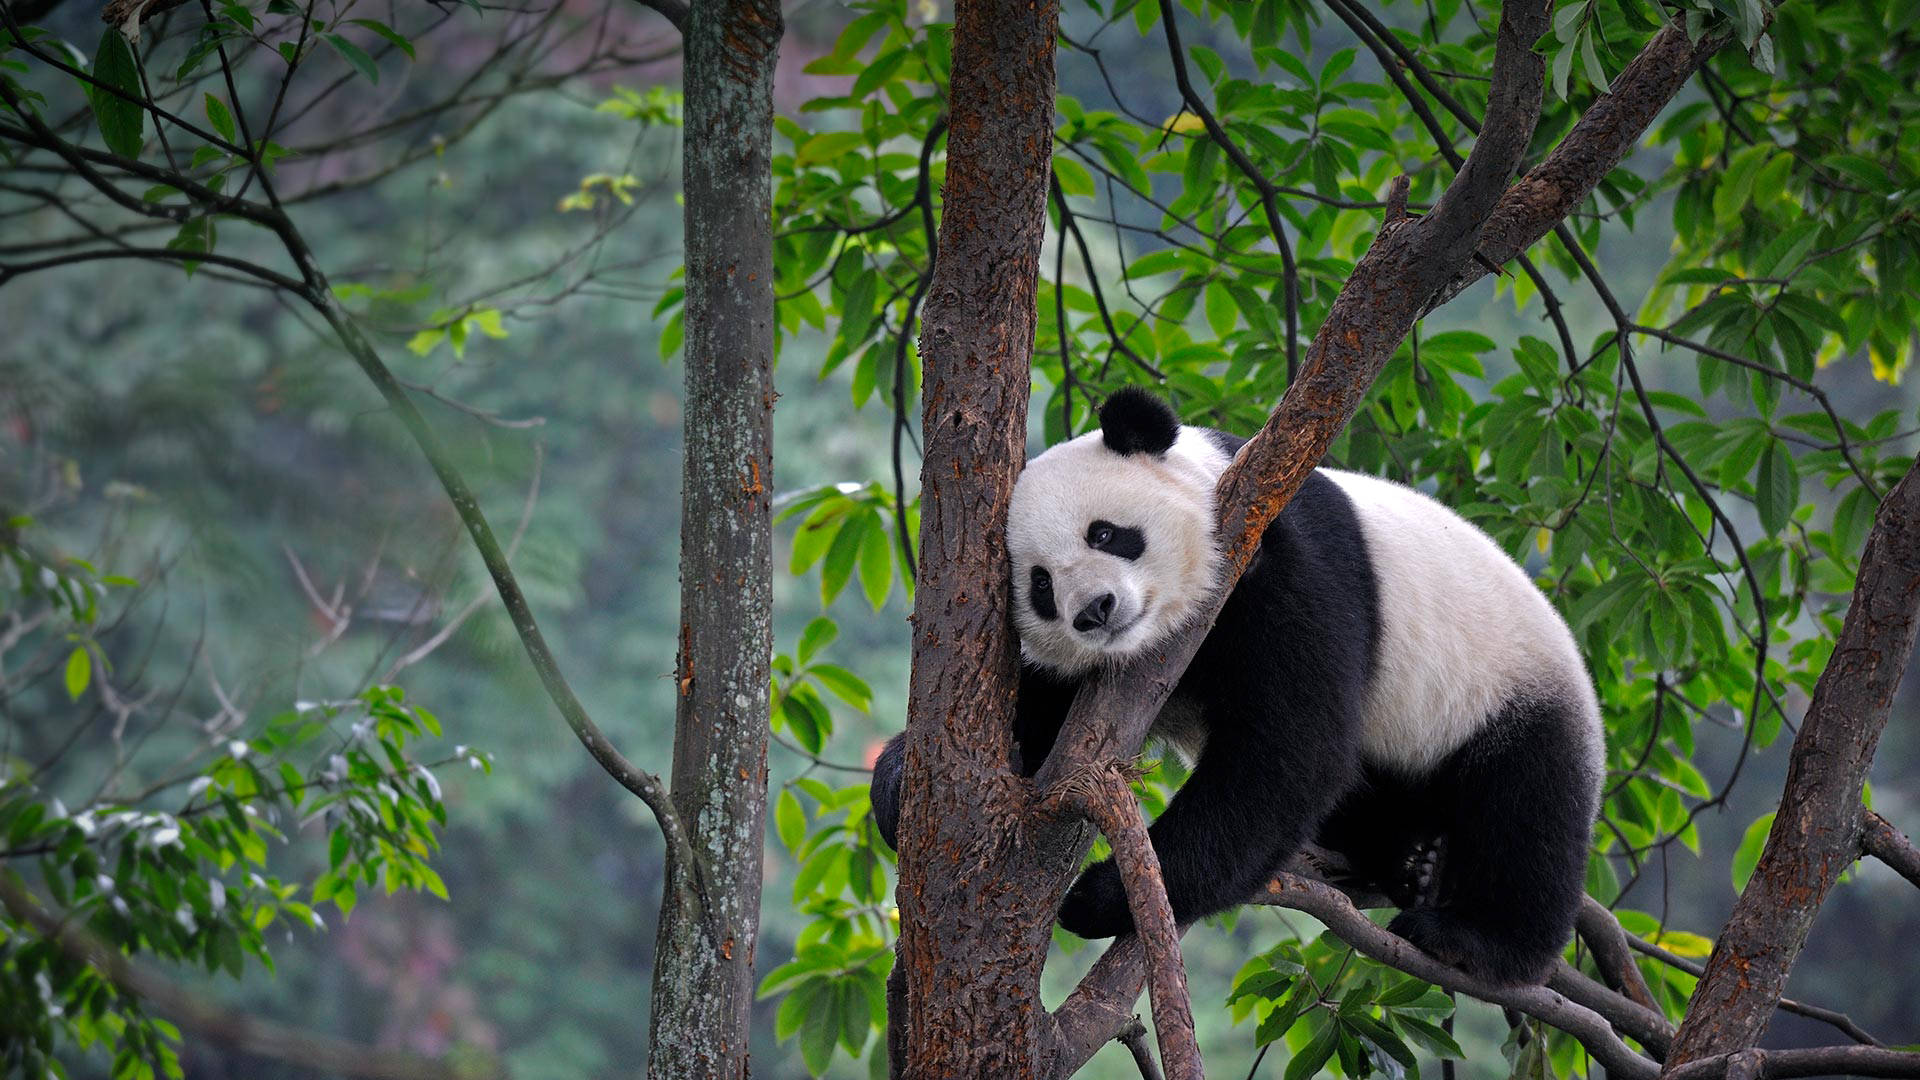 Cute Panda On Top Of Tree